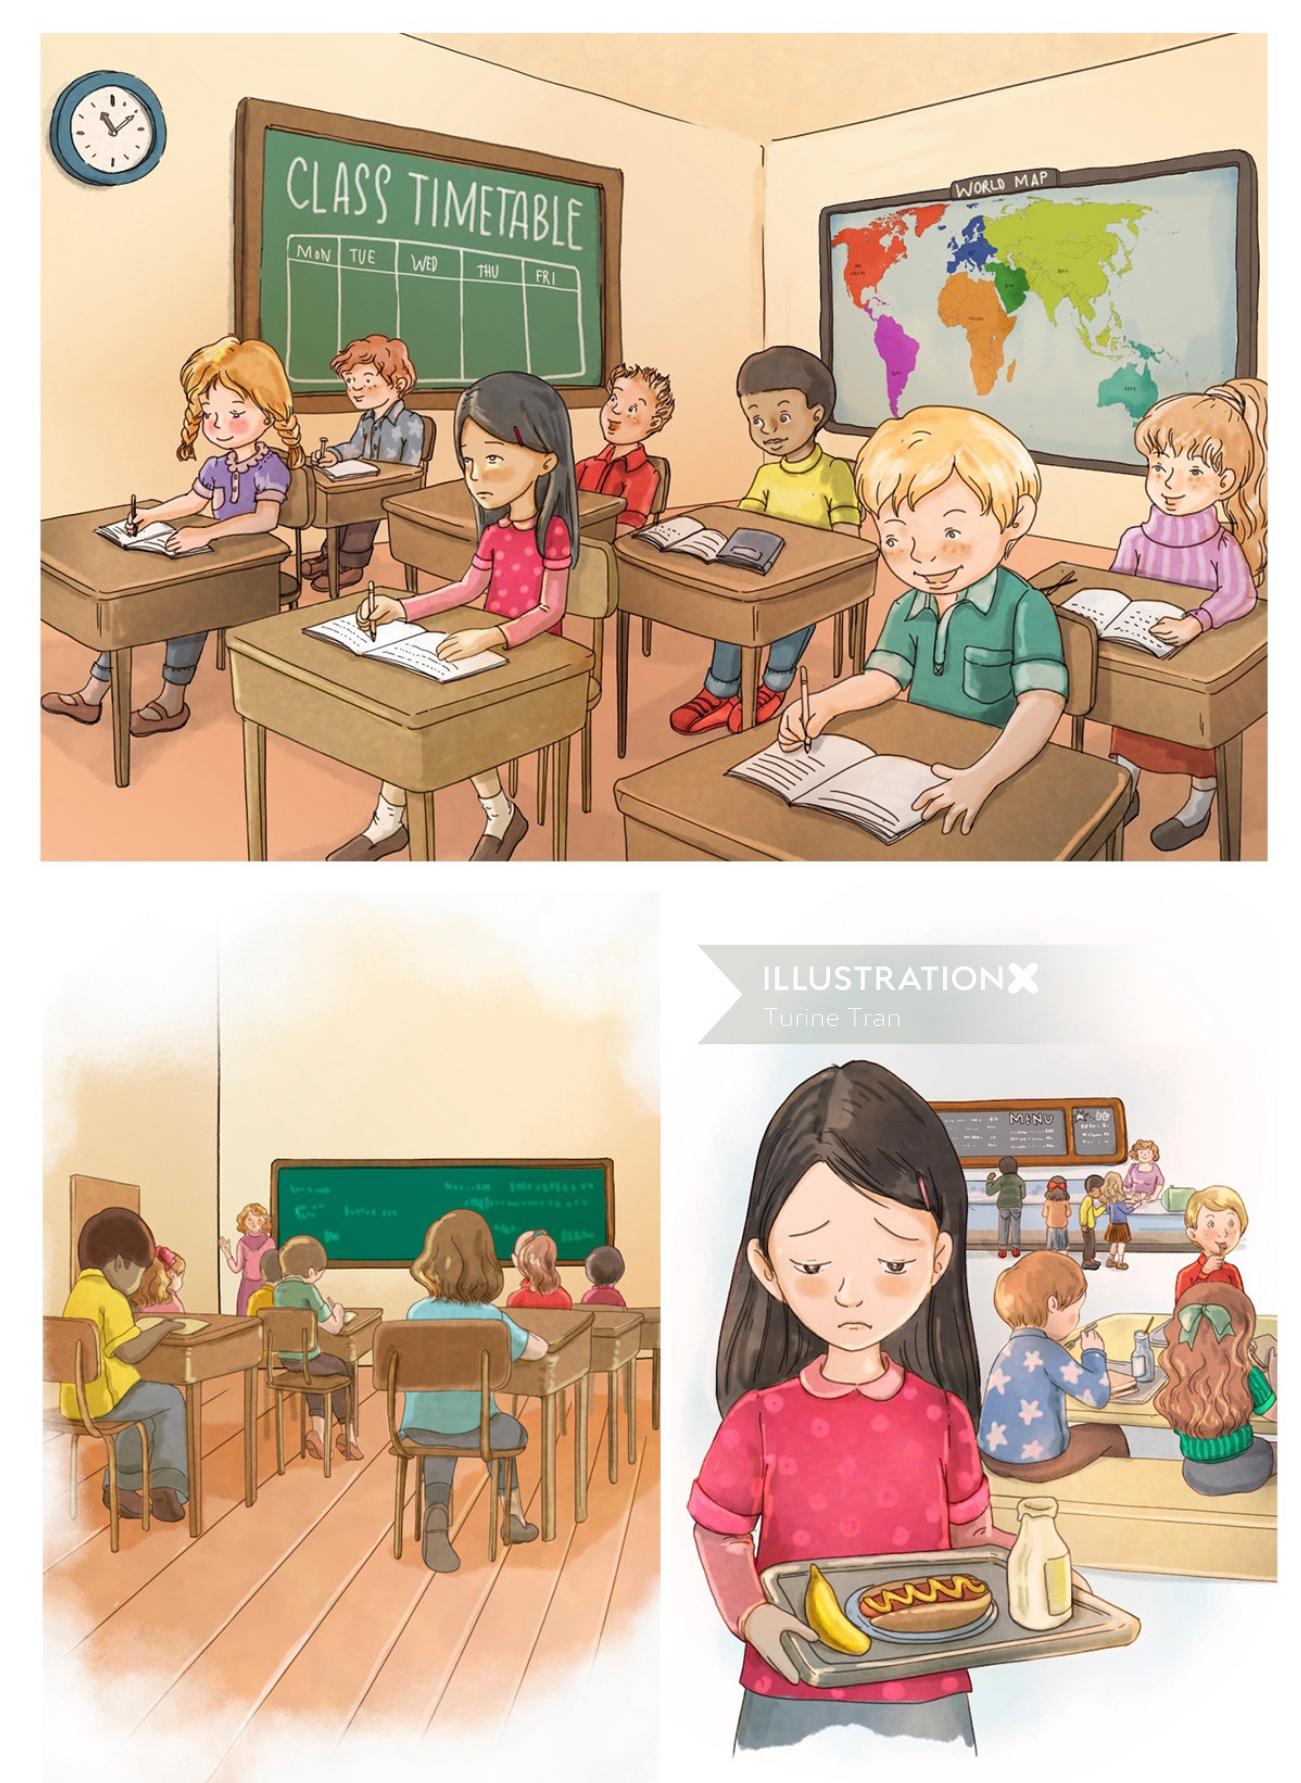 Enfants graphiques en classe